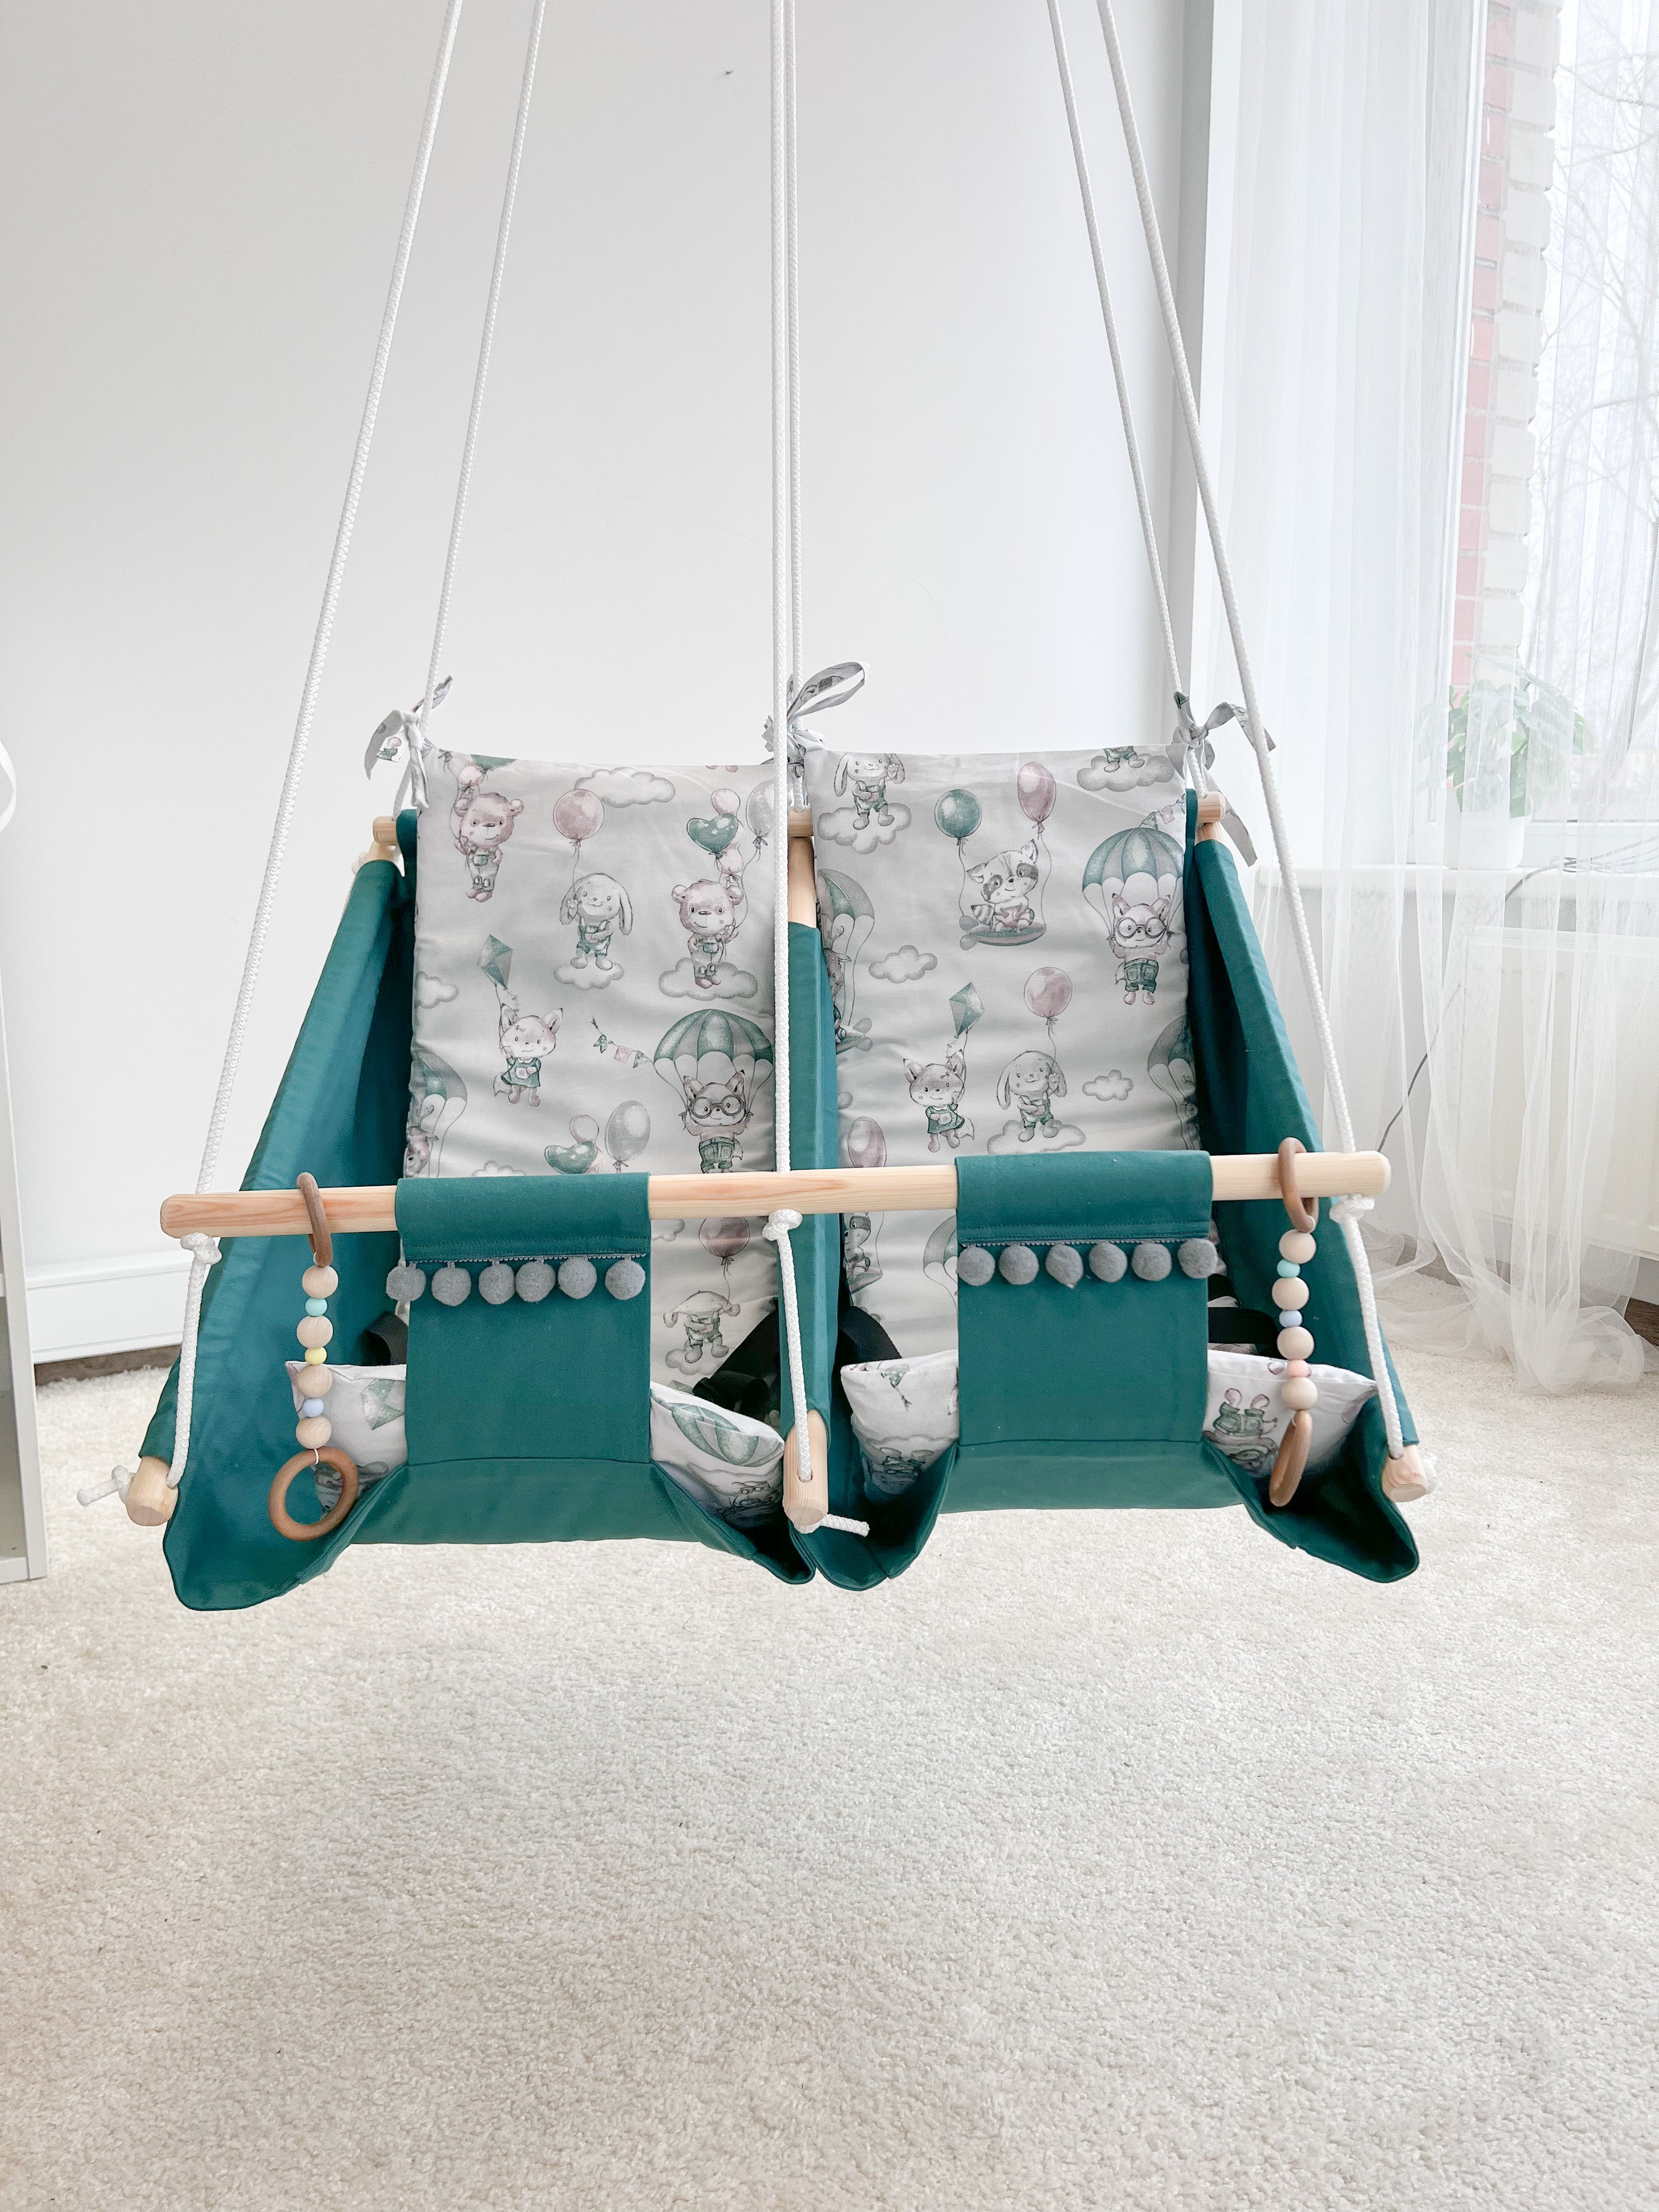 Twin hammock swing "Childhood"